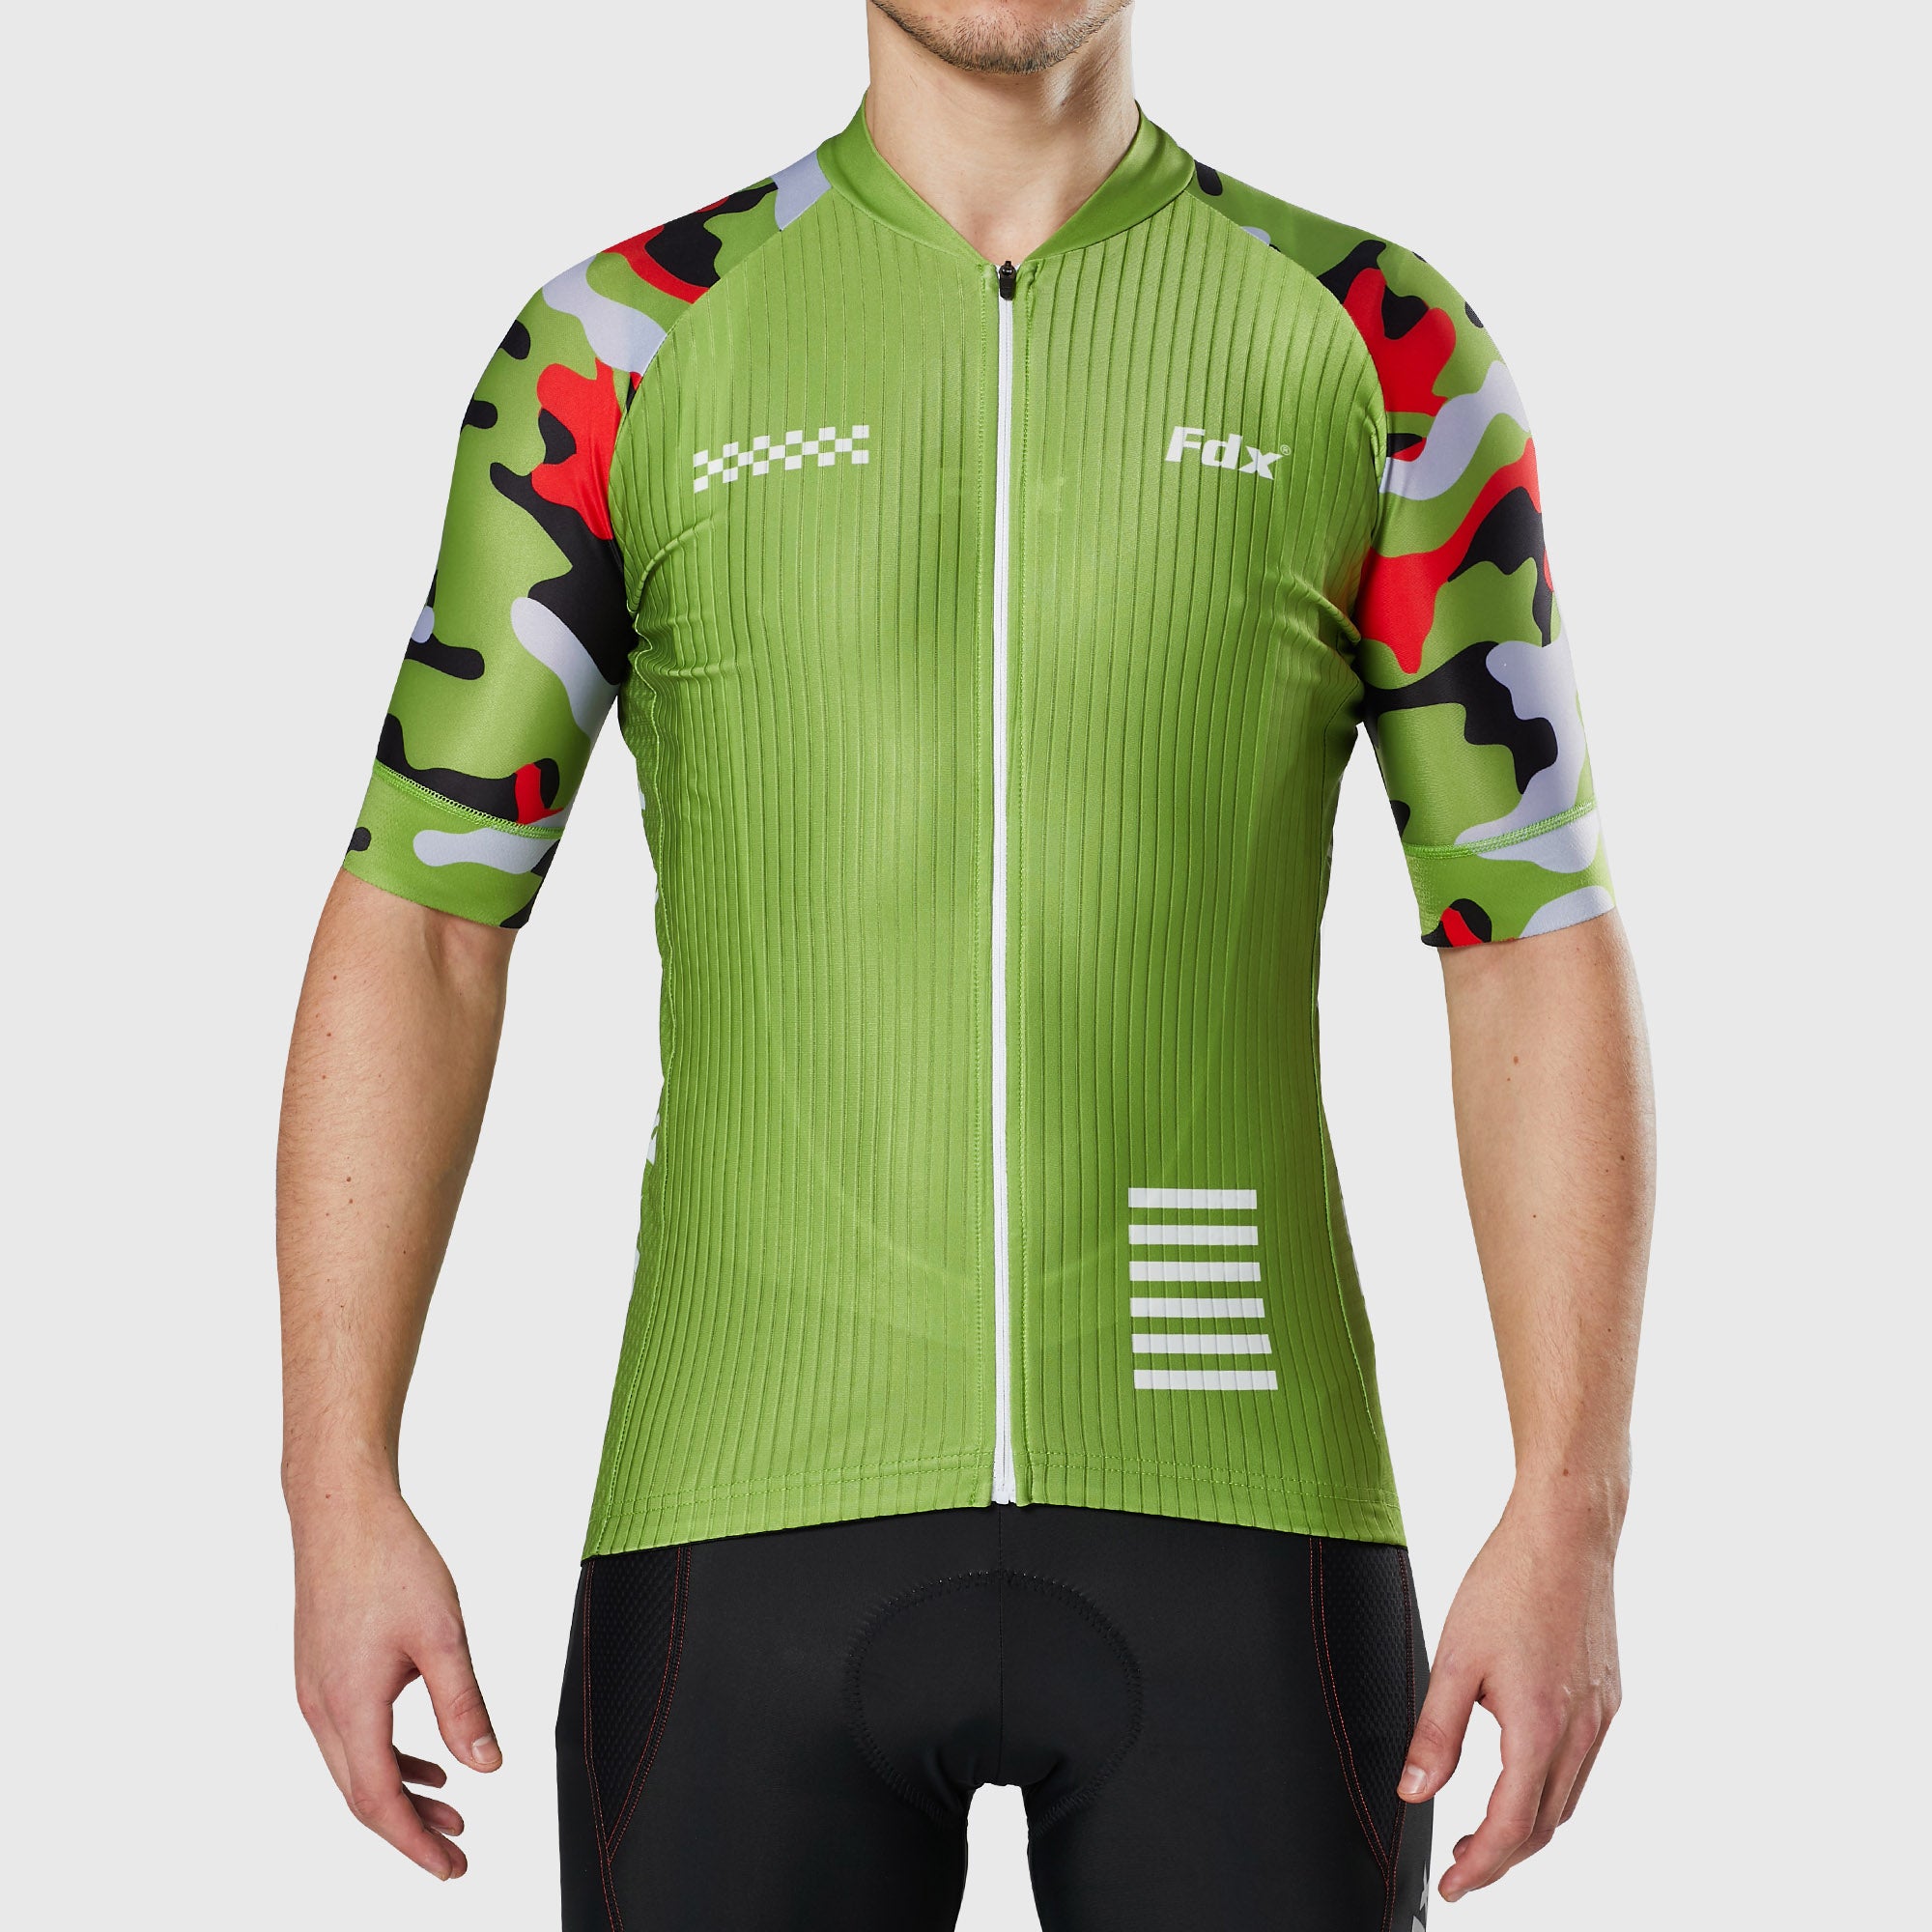 Fdx Mens Green Short Sleeve Cycling Jersey for Summer Best Road Bike Wear Top Light Weight, Full Zipper, Pockets & Hi-viz Reflectors - Camouflage